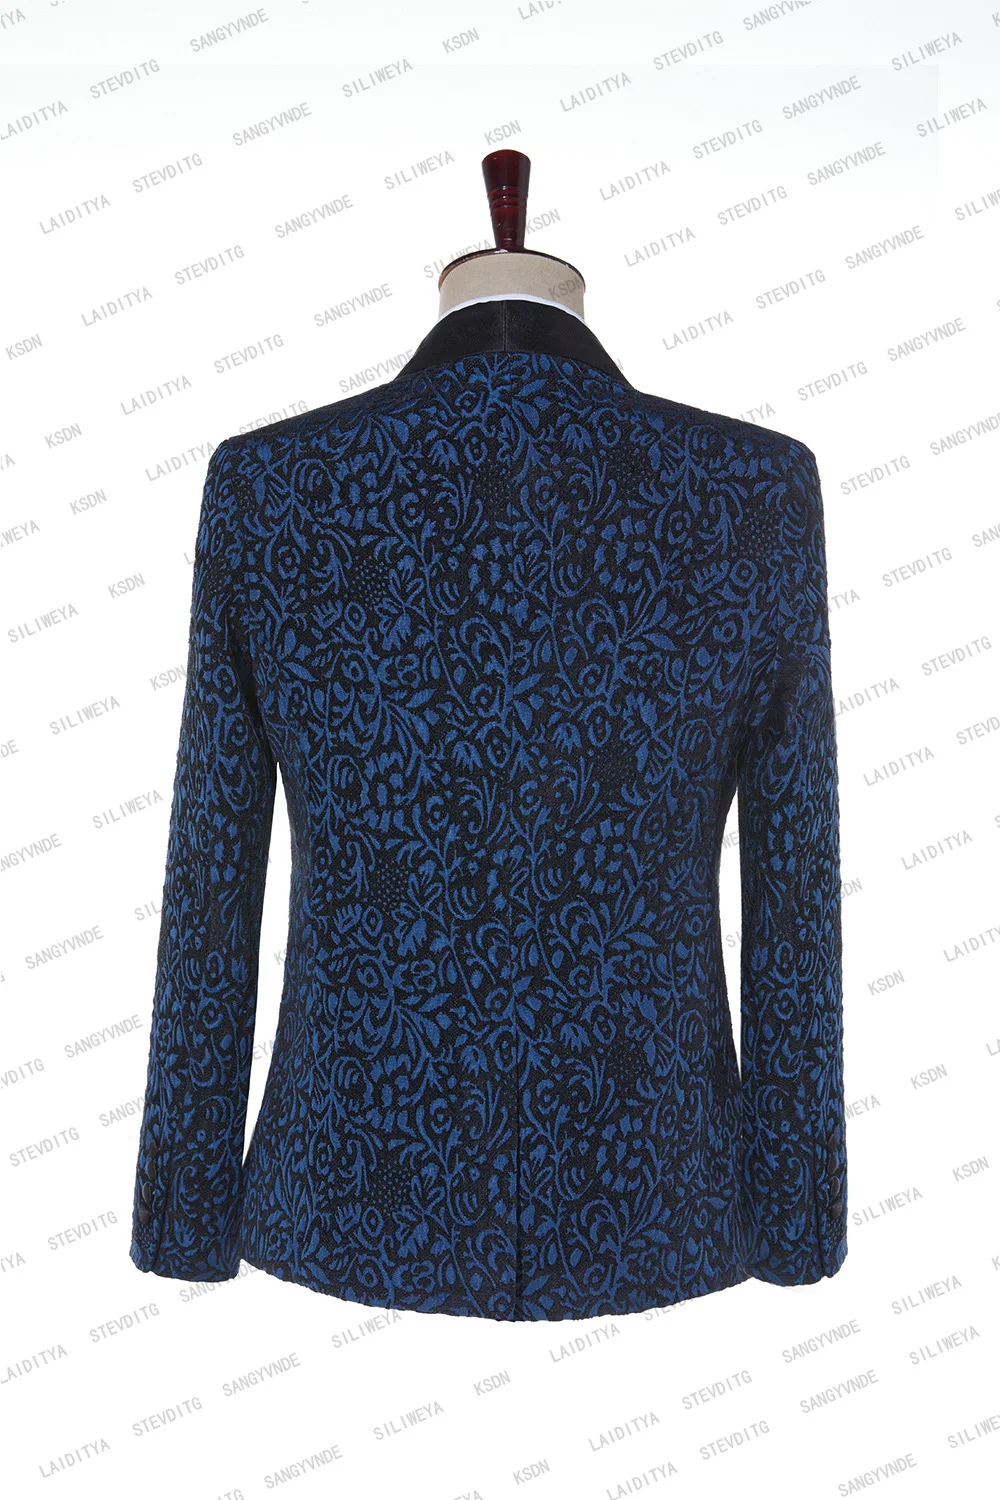 2023 כחול פרחוני אקארד חליפות גברים Slim Fit עם כפול עם חזה החתונה טוקסידו השושבינים סריג שחור דש האופנה הגברי - 5